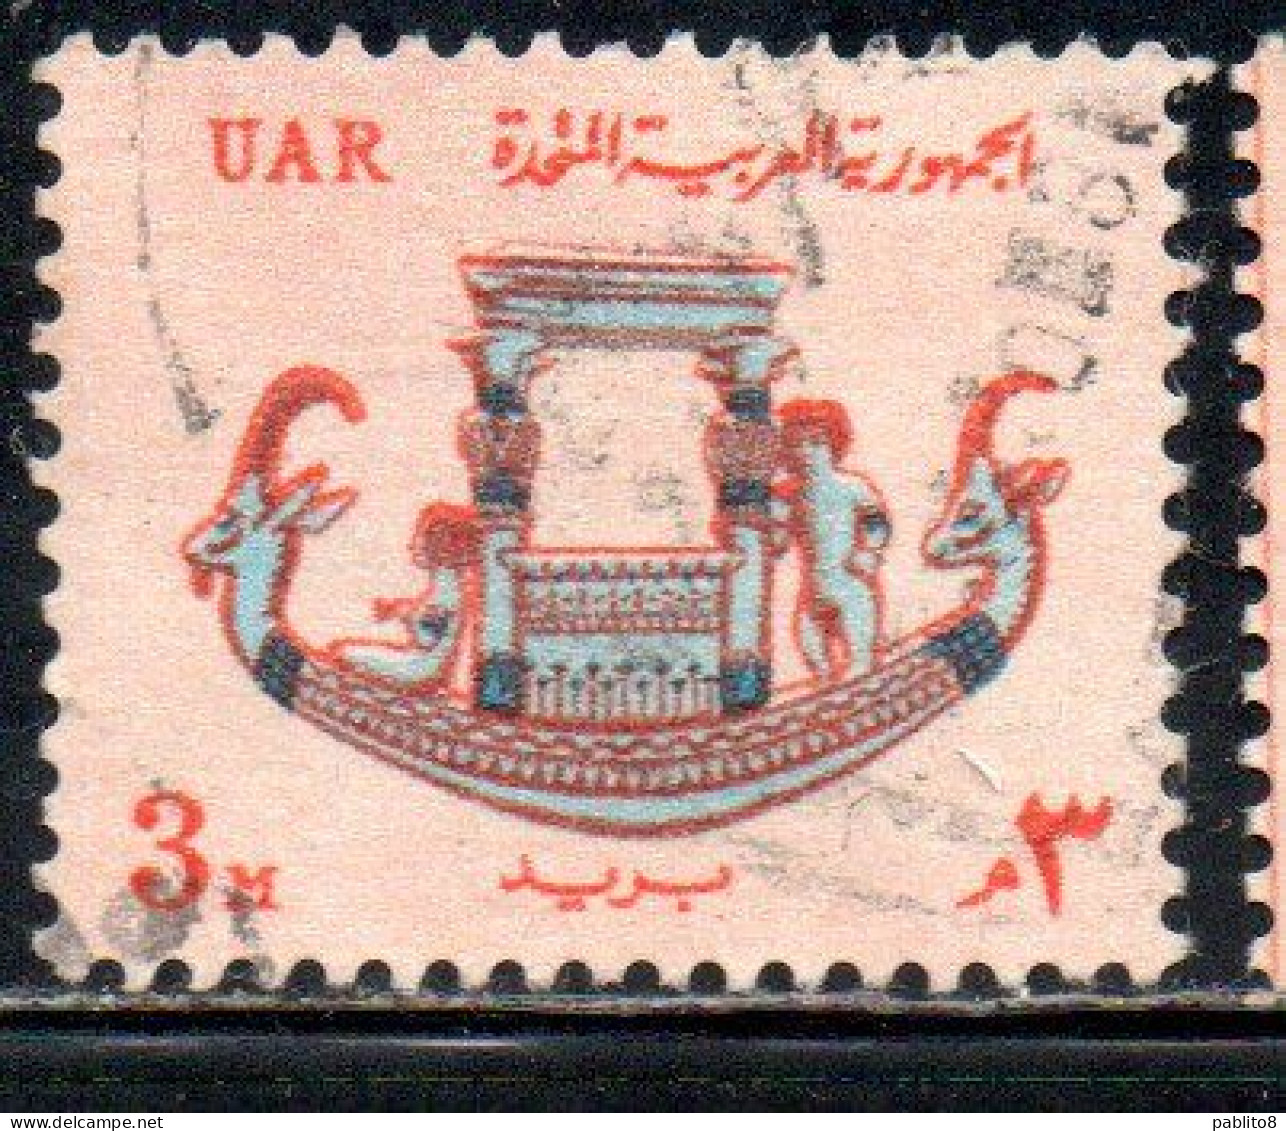 UAR EGYPT EGITTO 1964 1967 PHARAONIC CALCITE BOAT 3m USED USATO OBLITERE' - Gebraucht